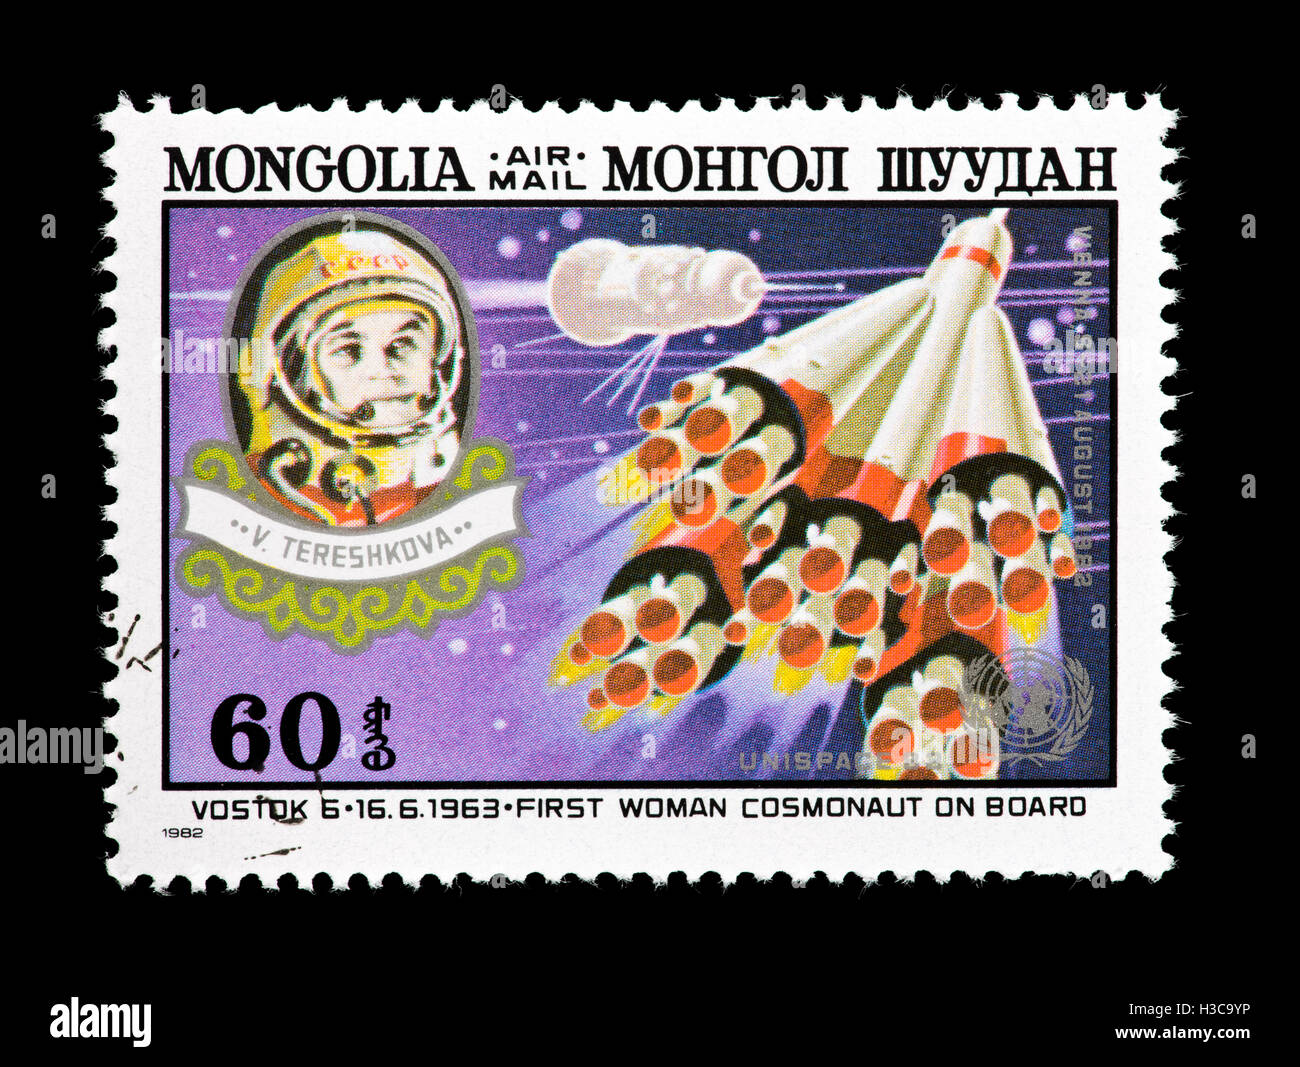 Sello de Mongolia representando el Vostok 6 y Valentina Tereshkova cosmonauta soviético, DE LA CONFERENCIA DE LAS NACIONES UNIDAS, la utilización del espacio con fines pacíficos. Foto de stock